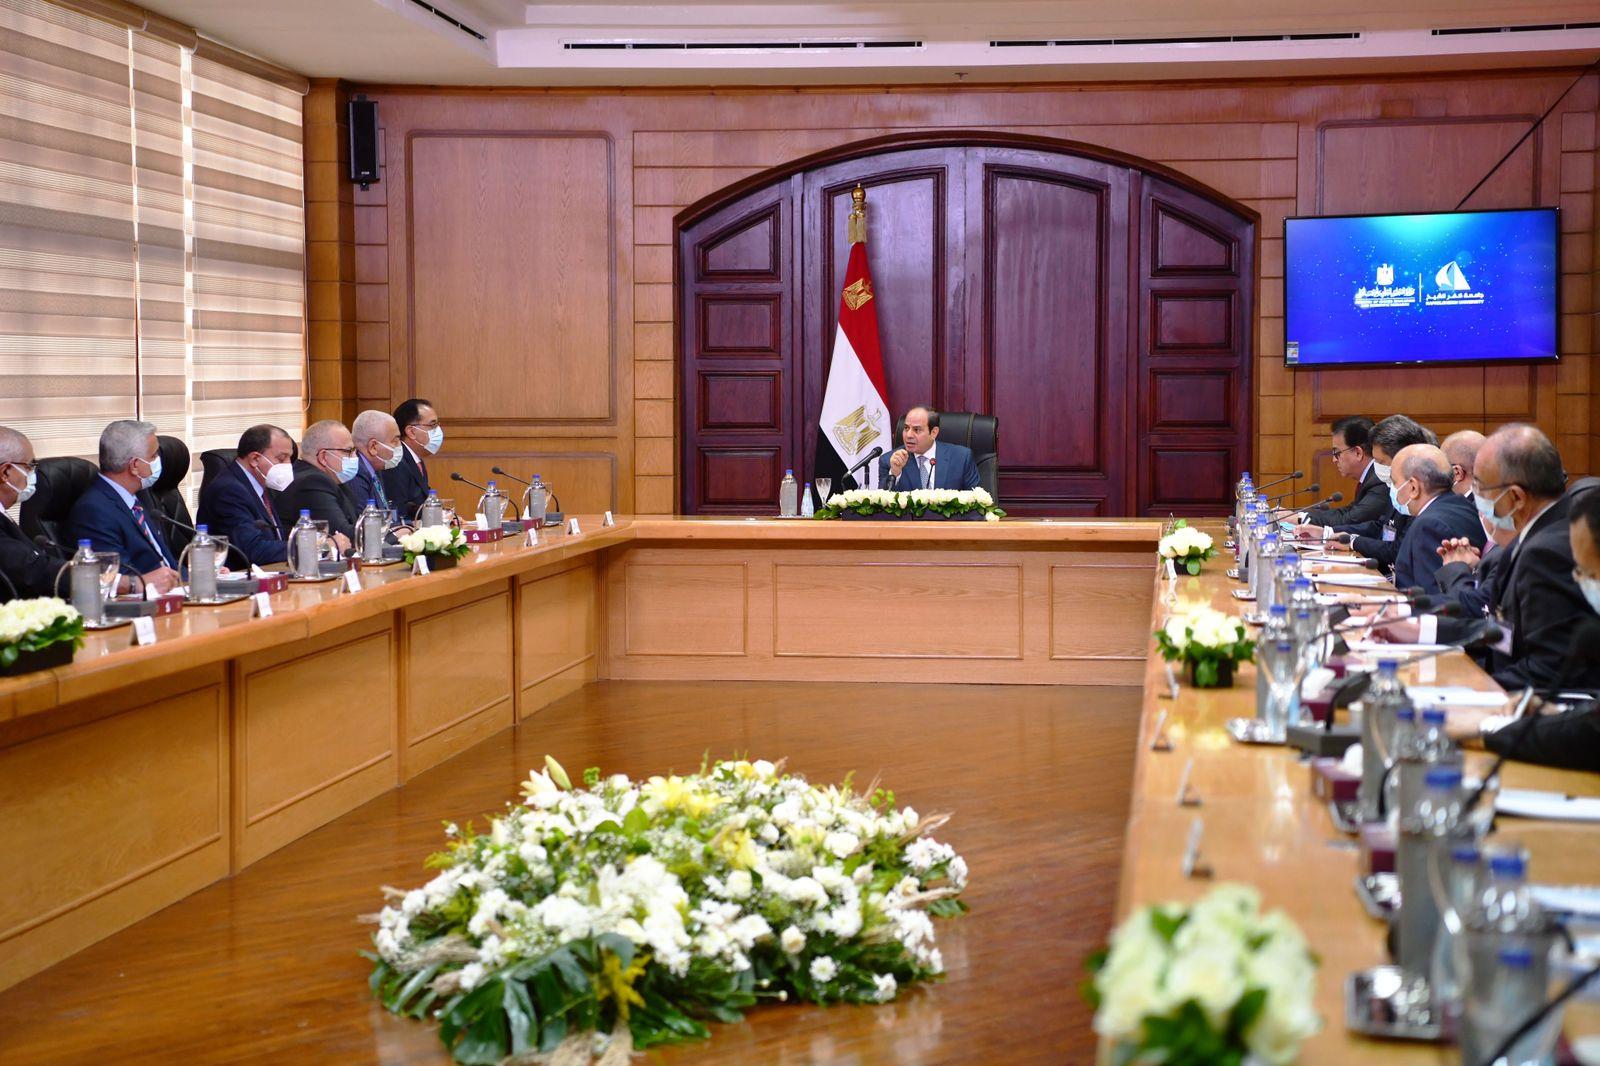 الرئيس السيسي يجتمع بالمجلس الأعلى للجامعات